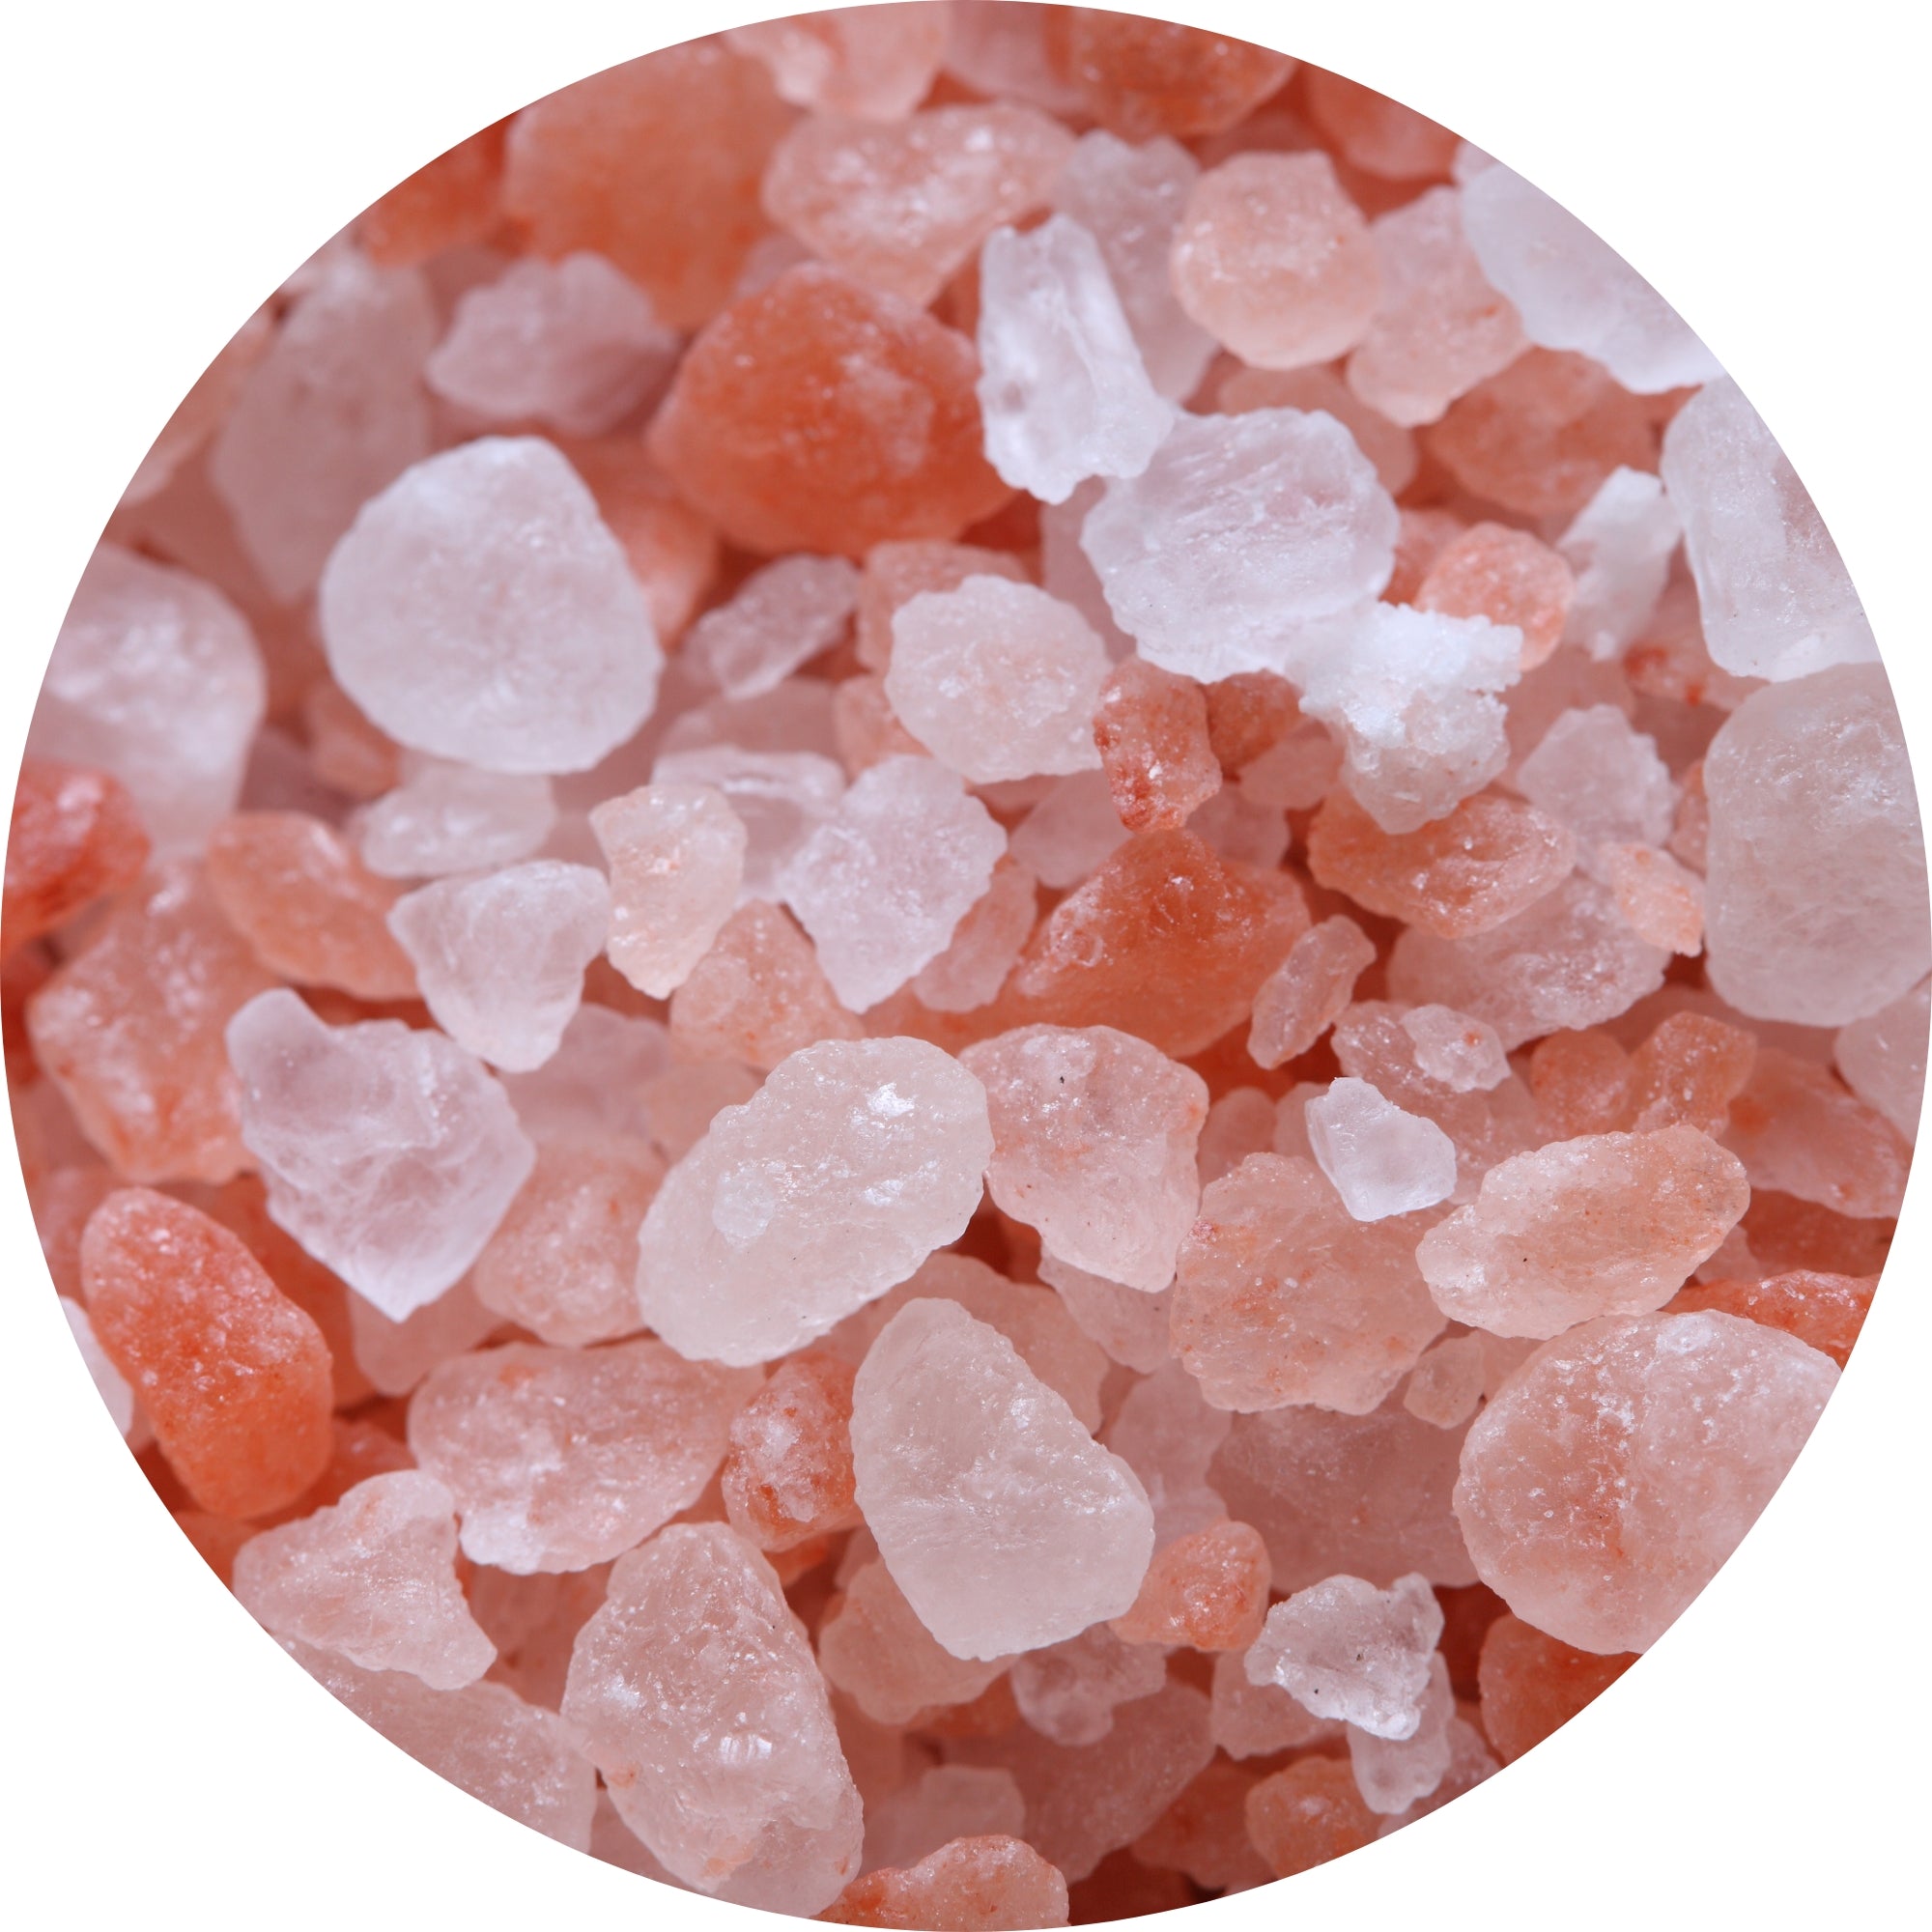 Himalayan pink salt ingredient